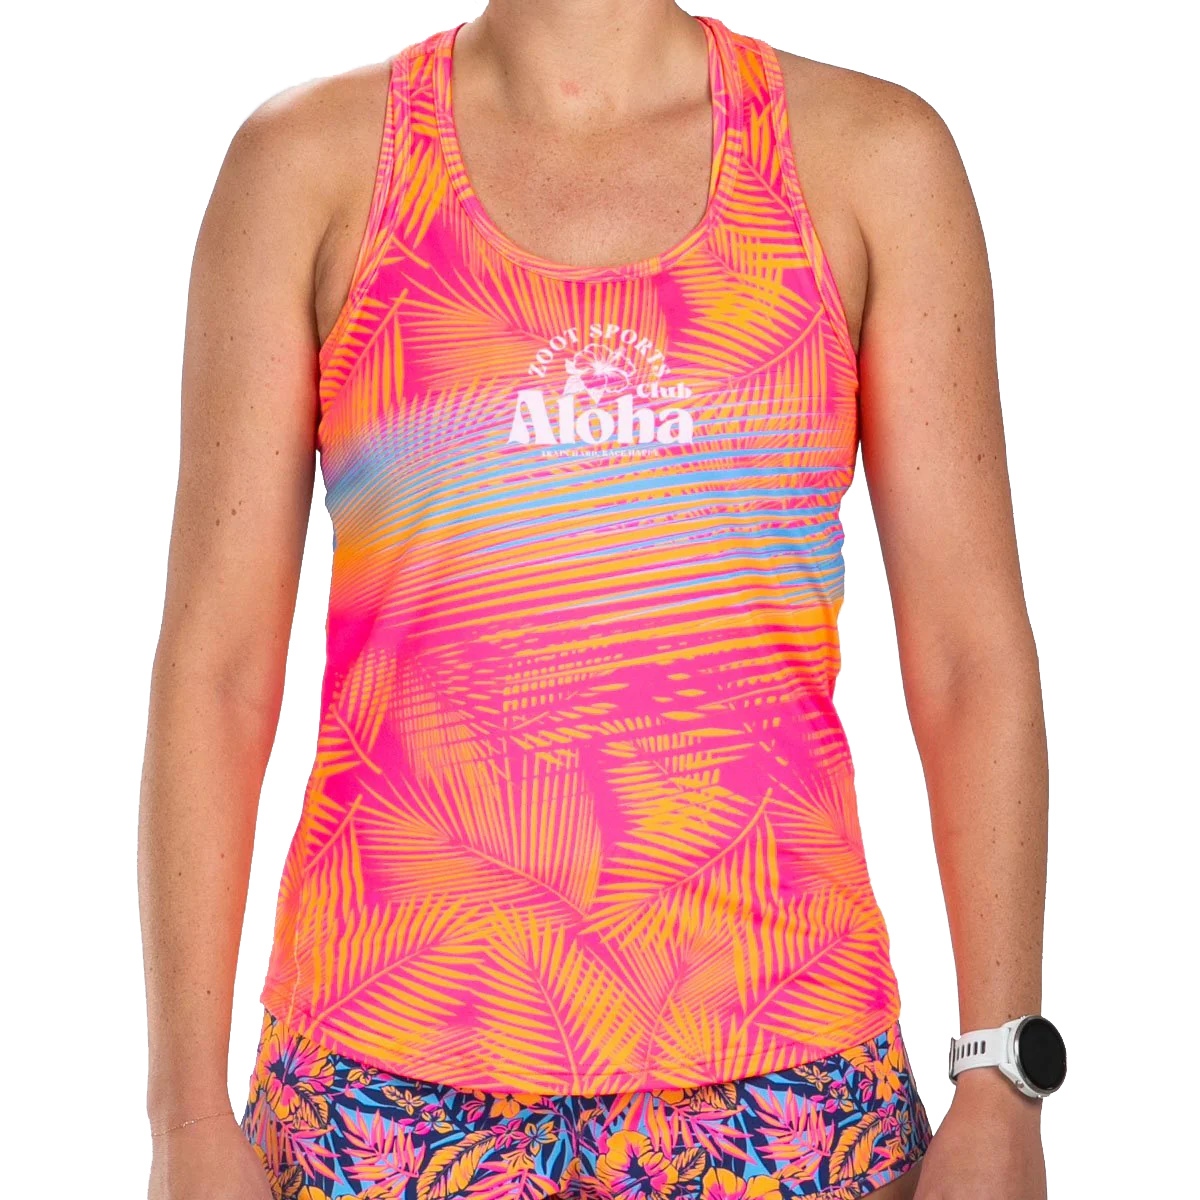 Produktbild von ZOOT LTD Lauf-Tanktop Damen - club aloha